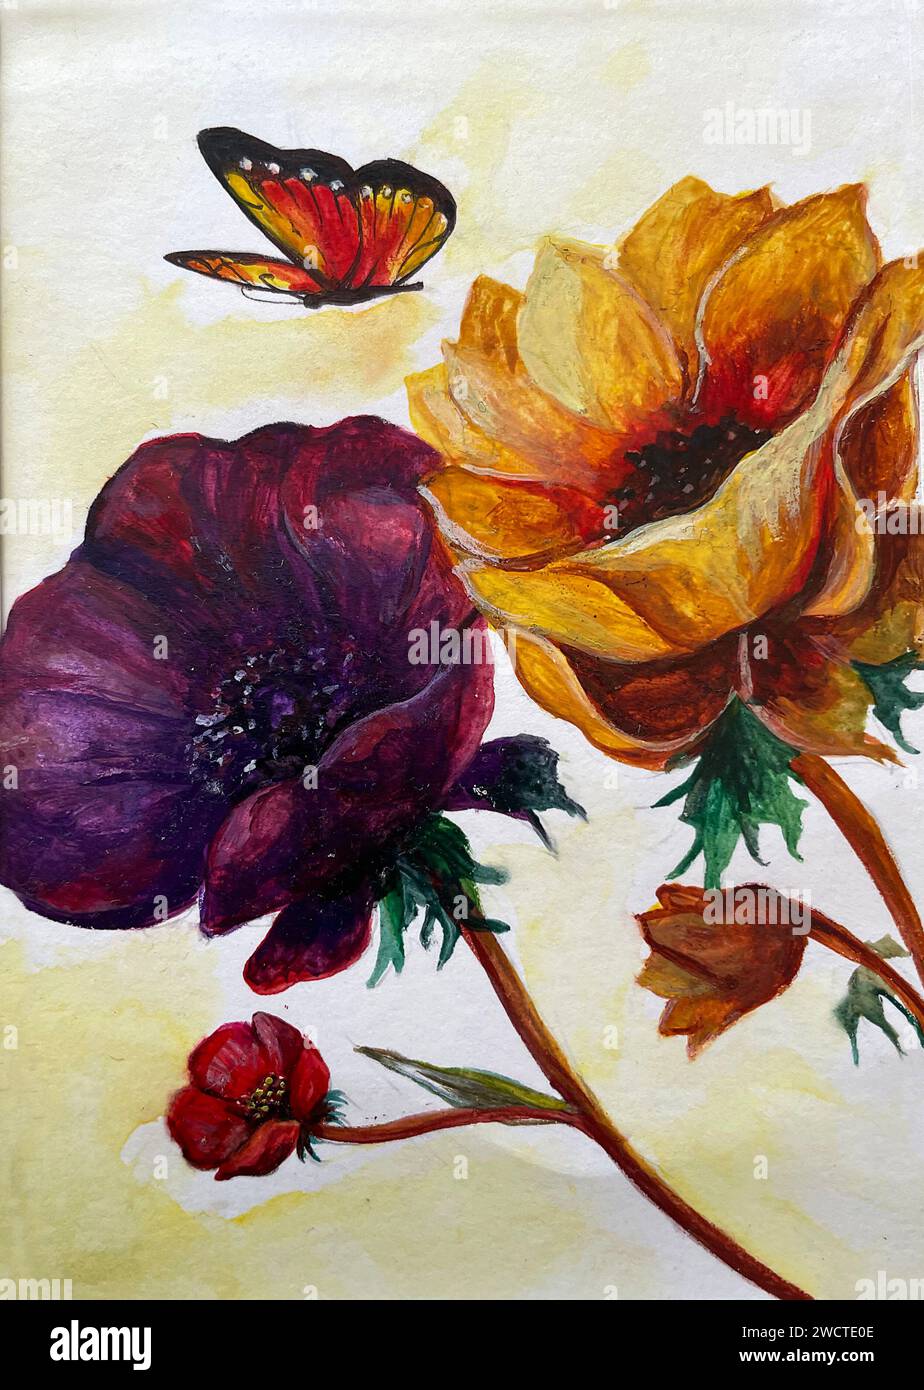 Une œuvre abstraite de peinture à l'huile de nature morte mettant en vedette des fleurs et des papillons Banque D'Images